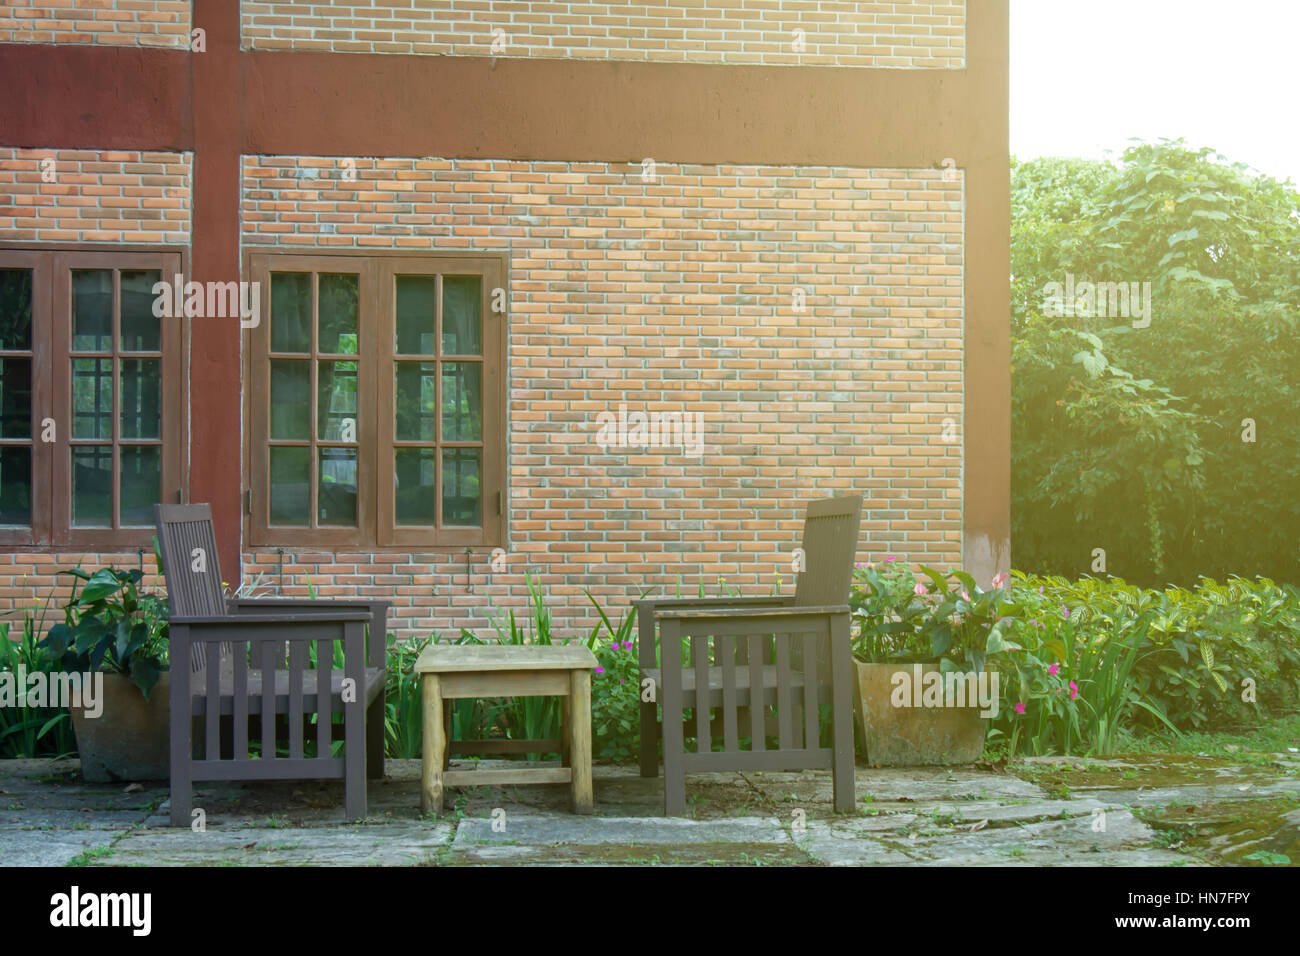 Table et chaise d'extérieur en brique accueil avant dans le jardin. Flare Soft du soleil. Banque D'Images